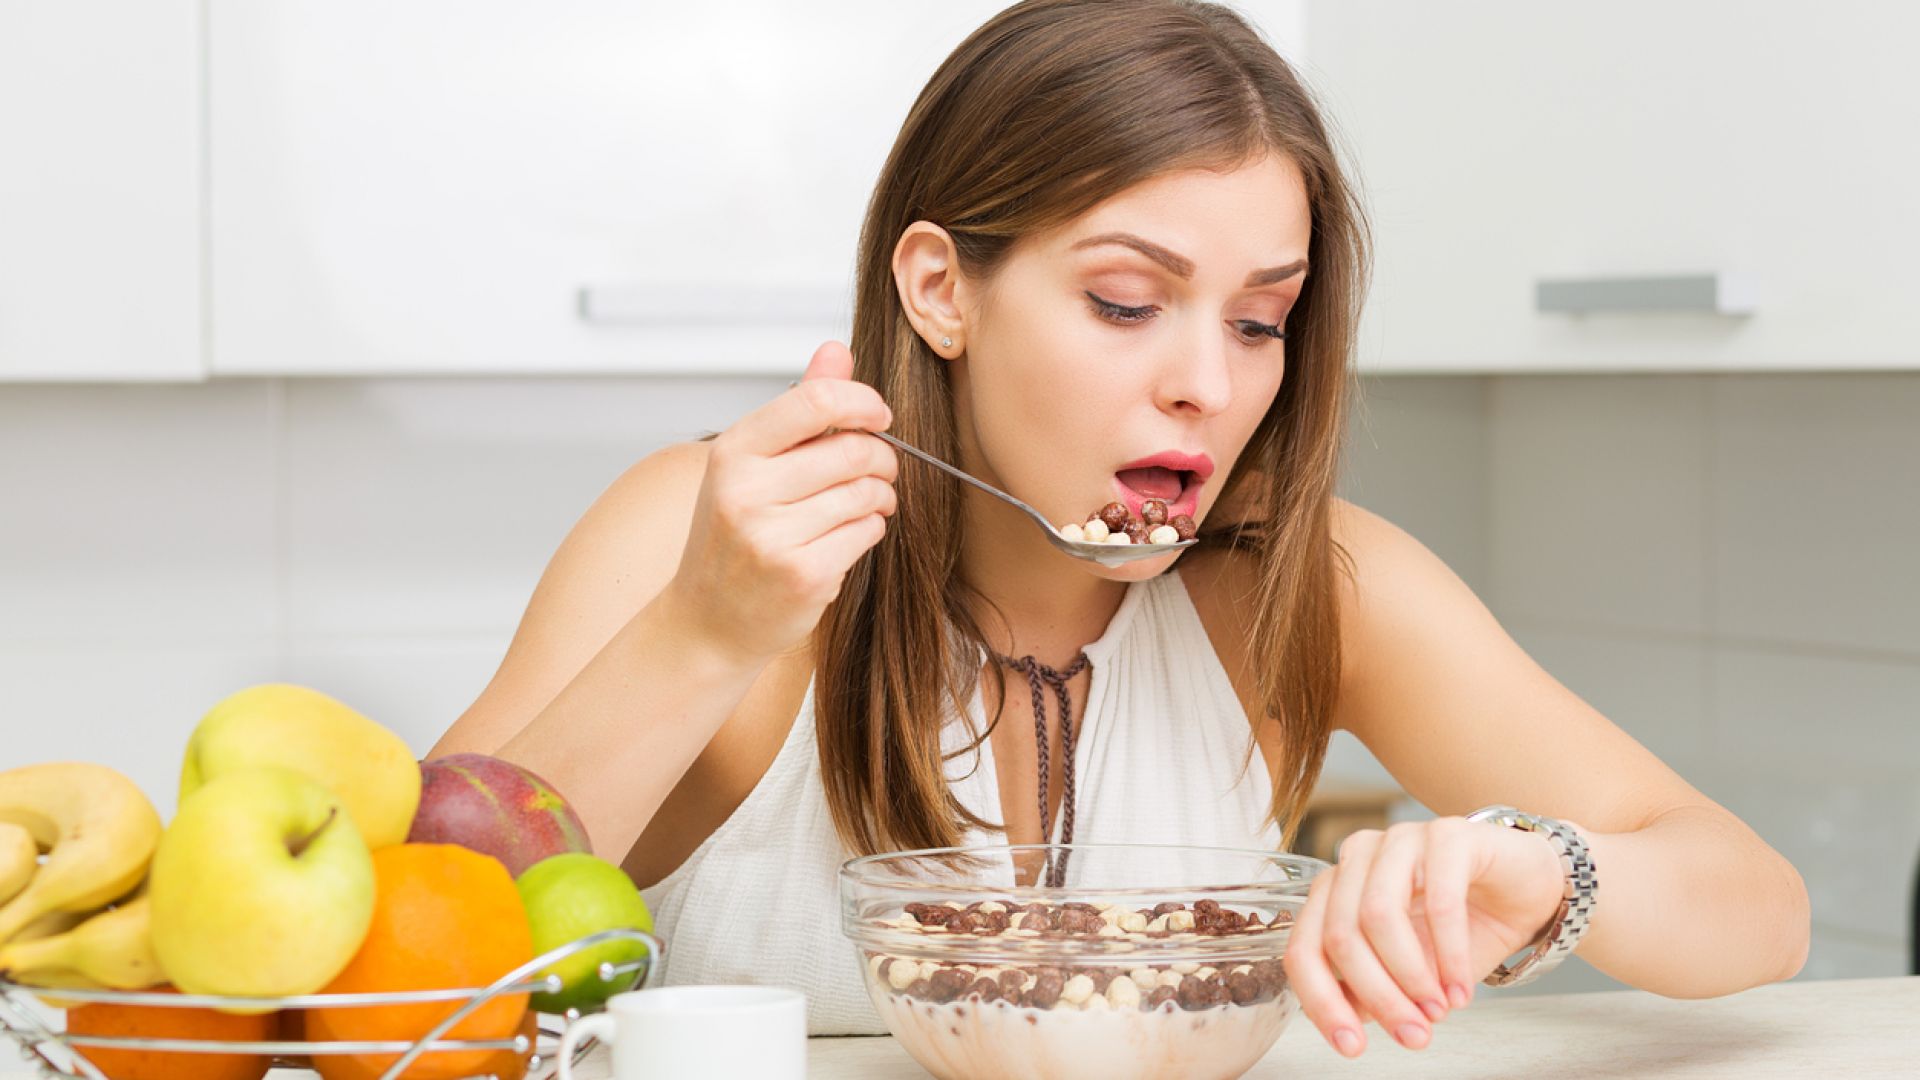 Времето на хранене влияе  върху телесния ритъм  и метаболизма